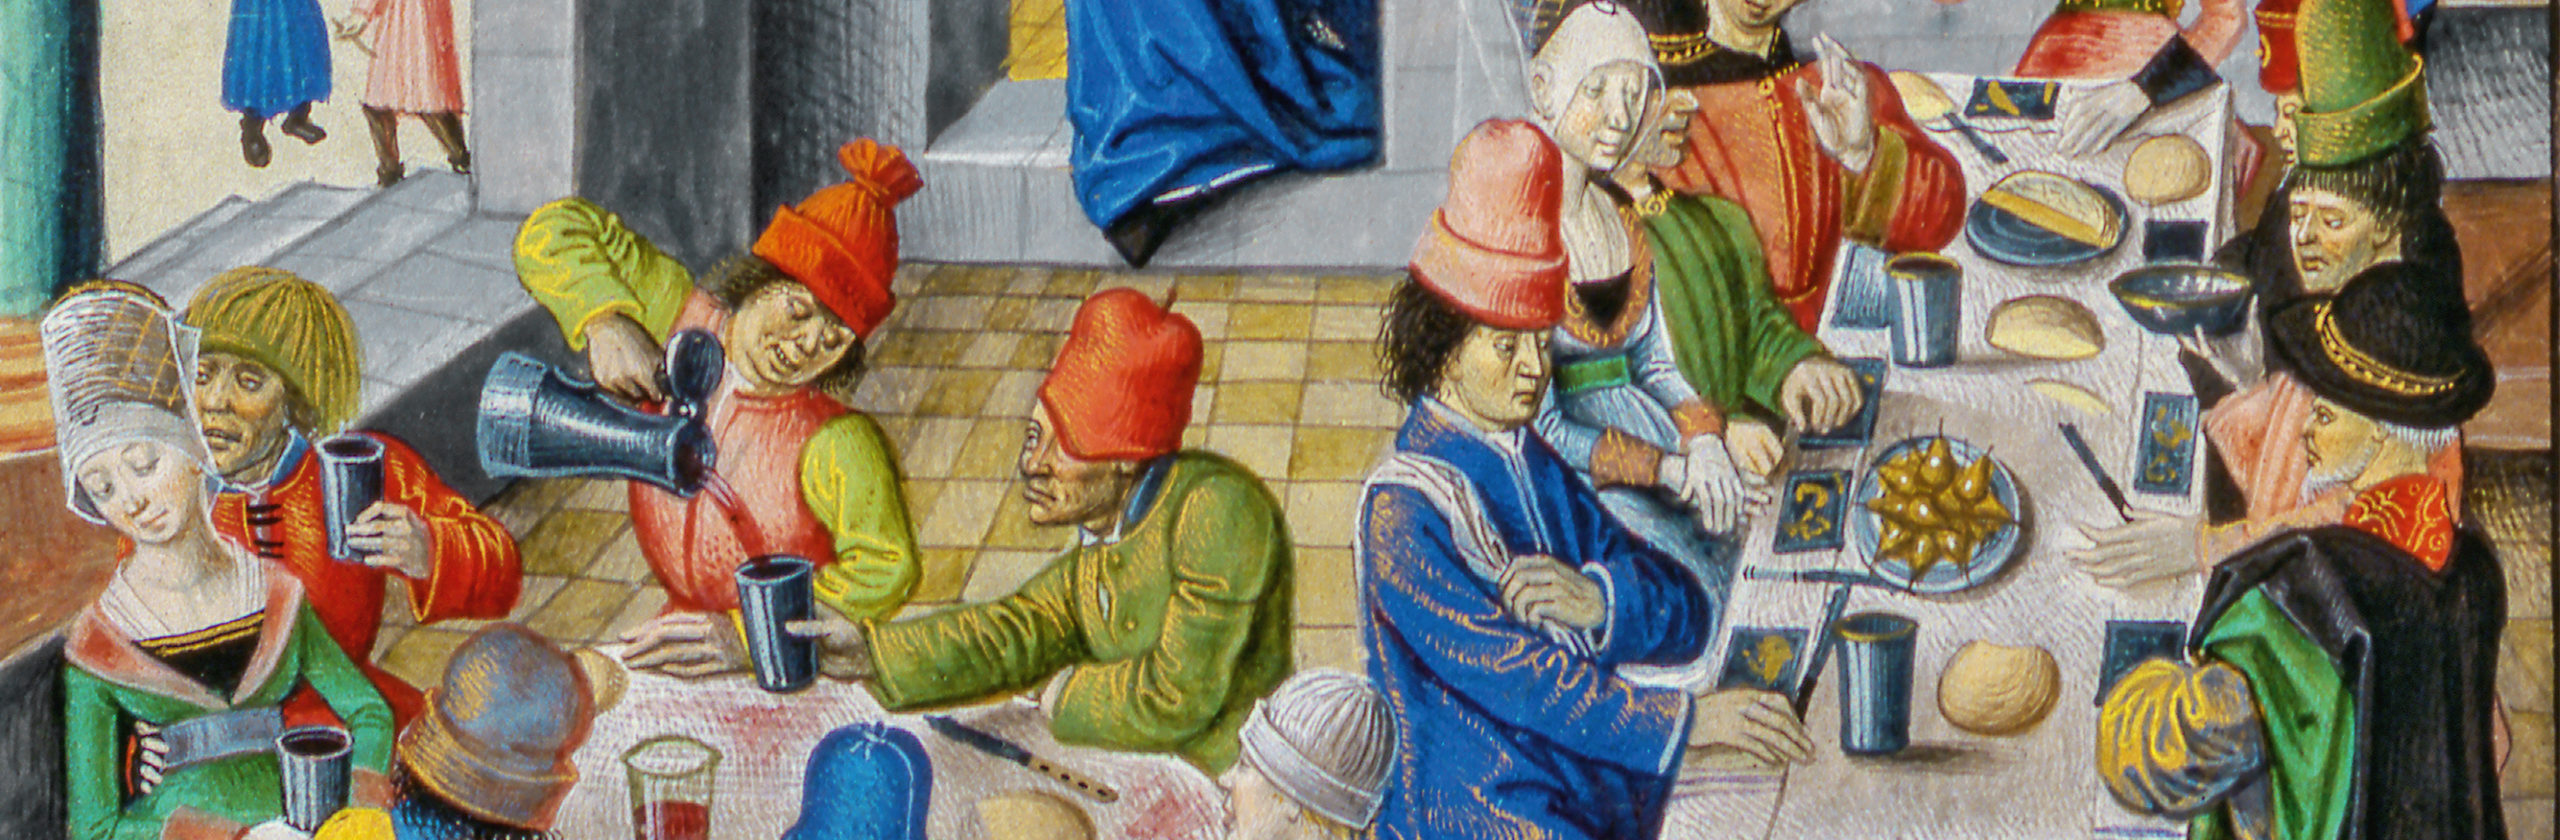 Lecker! - Essen und Trinken im Mittelalter